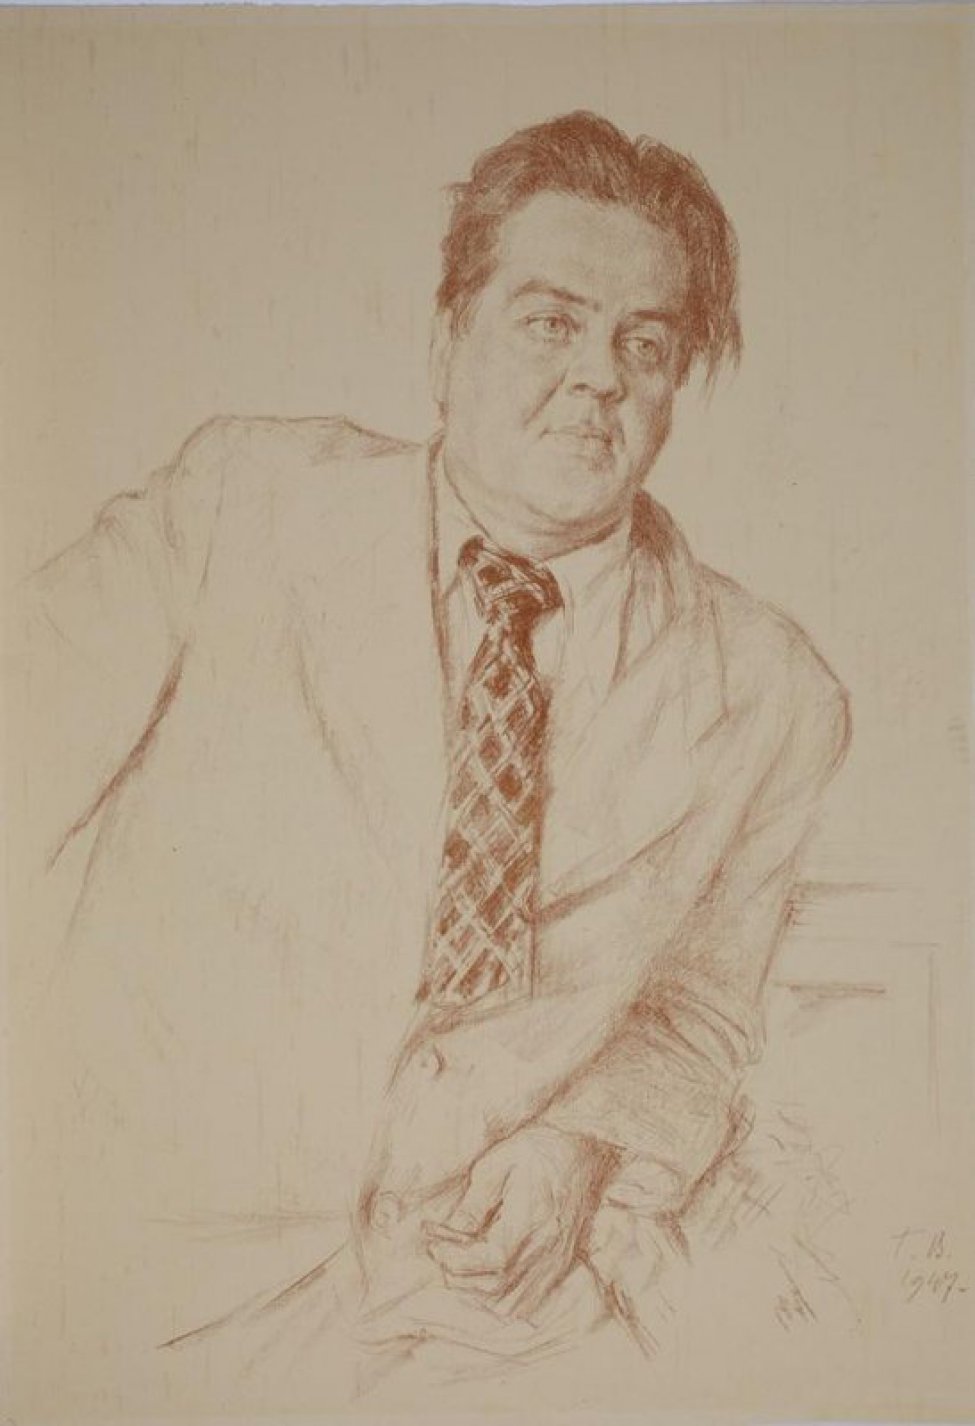 Дано поясное изображение мужчины средних лет в светлом пиджаке и клетчатом галстуке, в левой руке карандаш, фигура расположена по диагонали листа. Справа внизу Г.В.  и дата 1947.